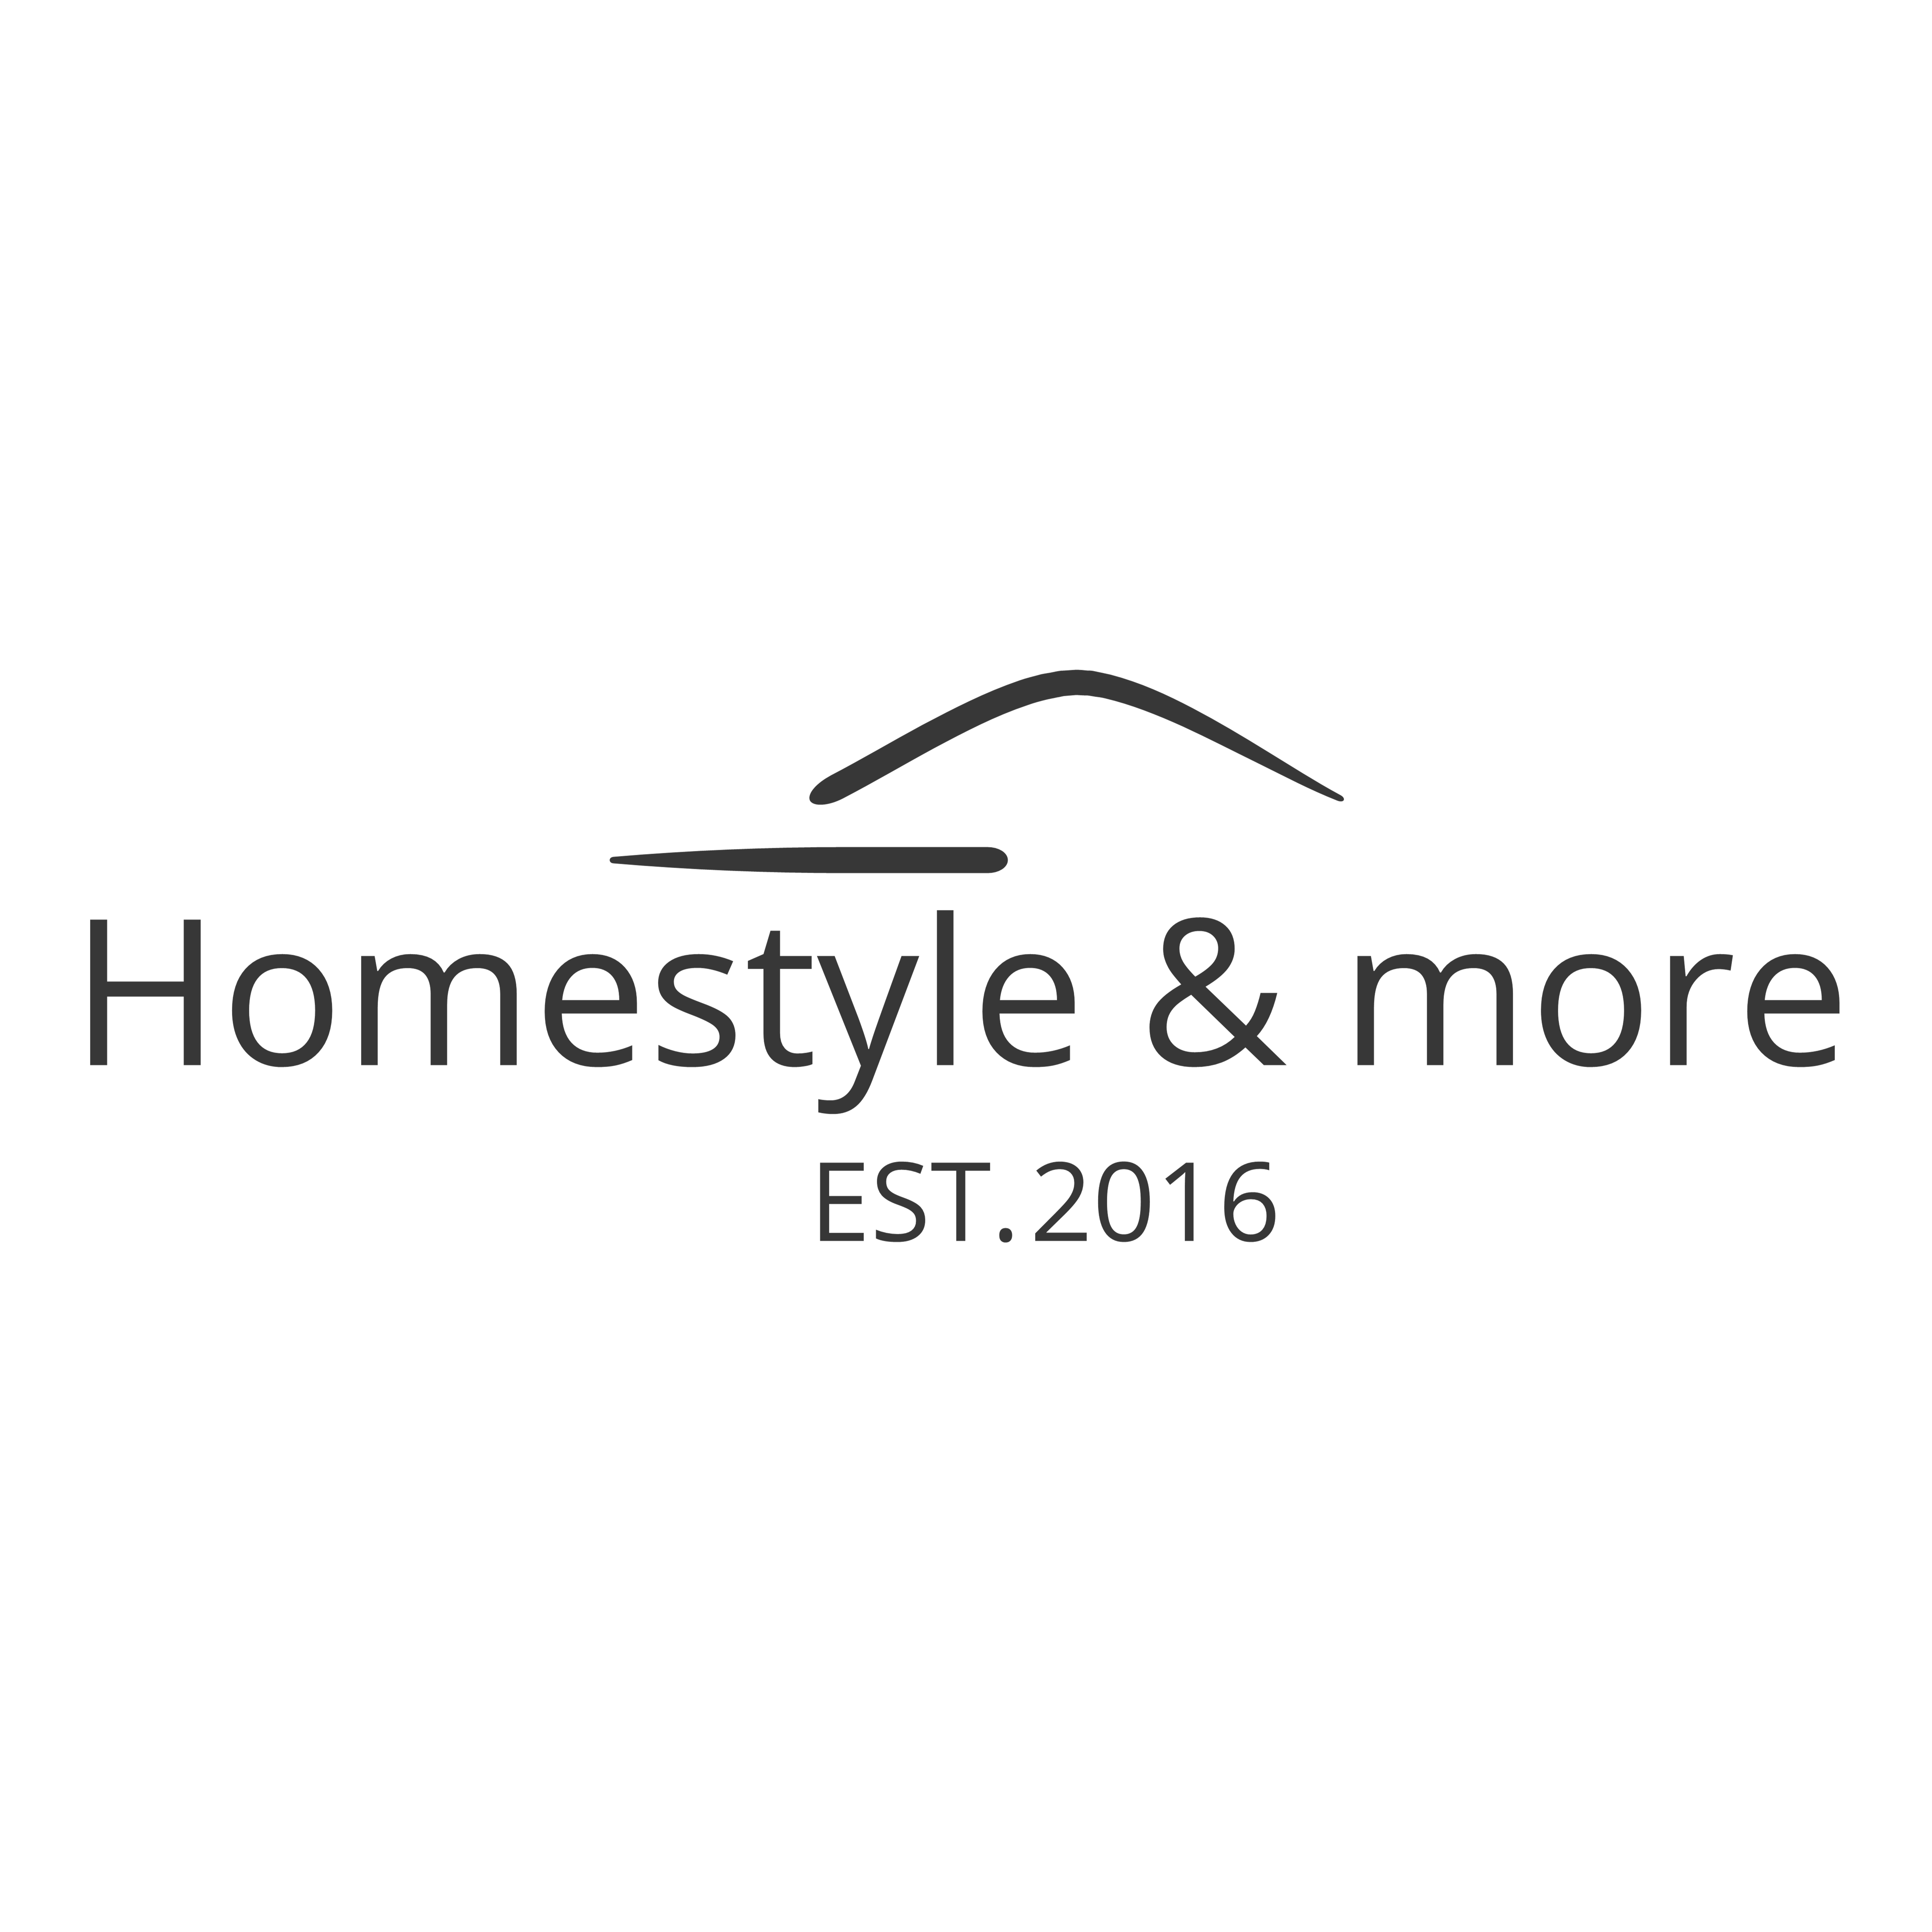 Homestyle & more Marcus Baumann Logo